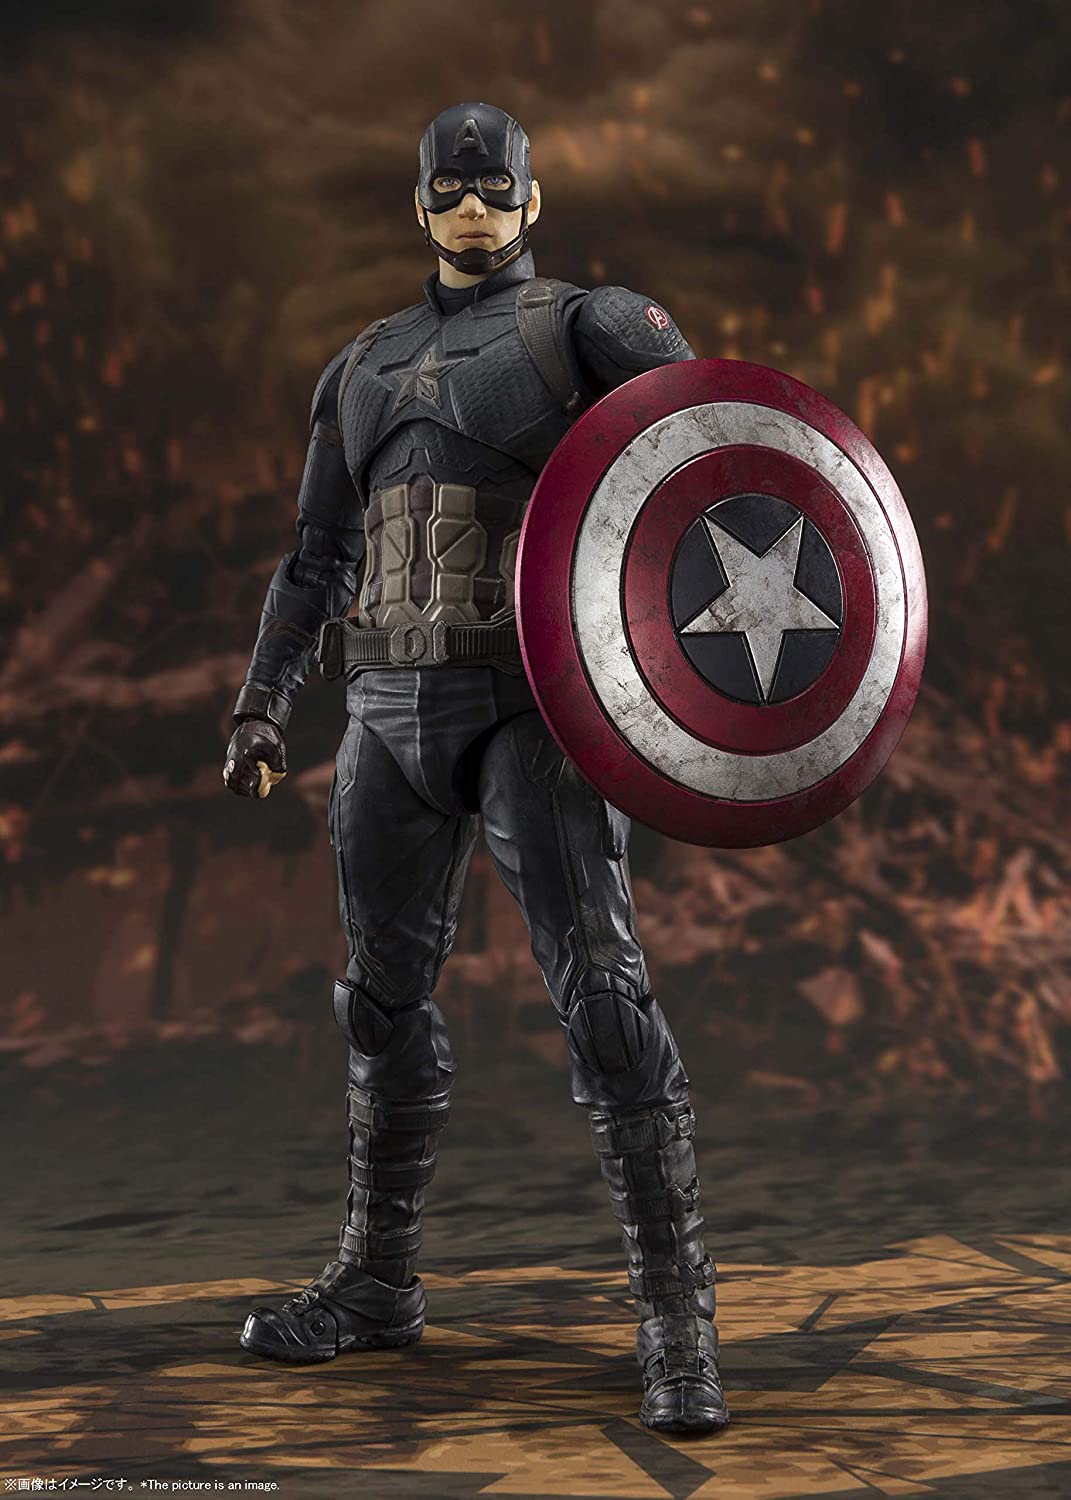 S.H. Figuarts Avengers: Endgame - Captain America Final Battle Edition